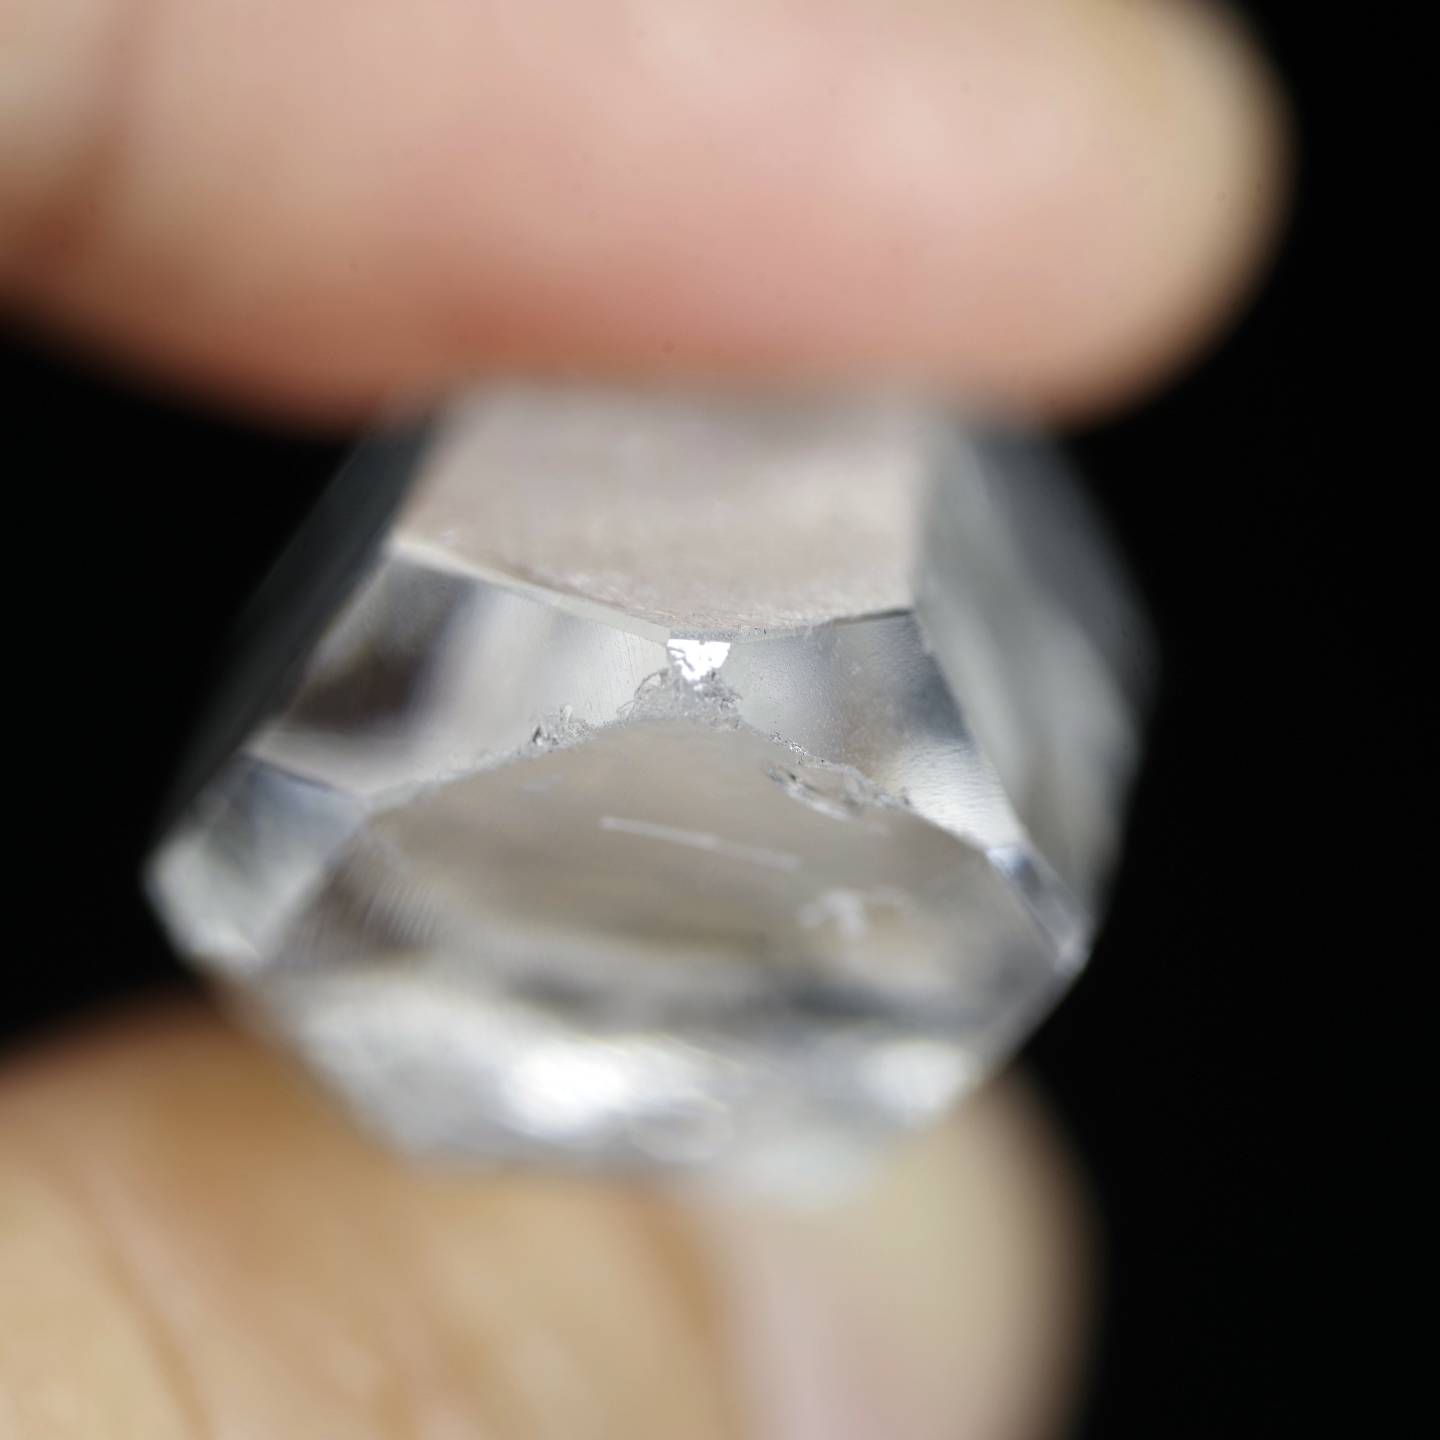 クォーツ 水晶 スターブラリー スターシード ブラジルコリント産3 Quartz Corinto Brazil 原石 写真現物 動画あり